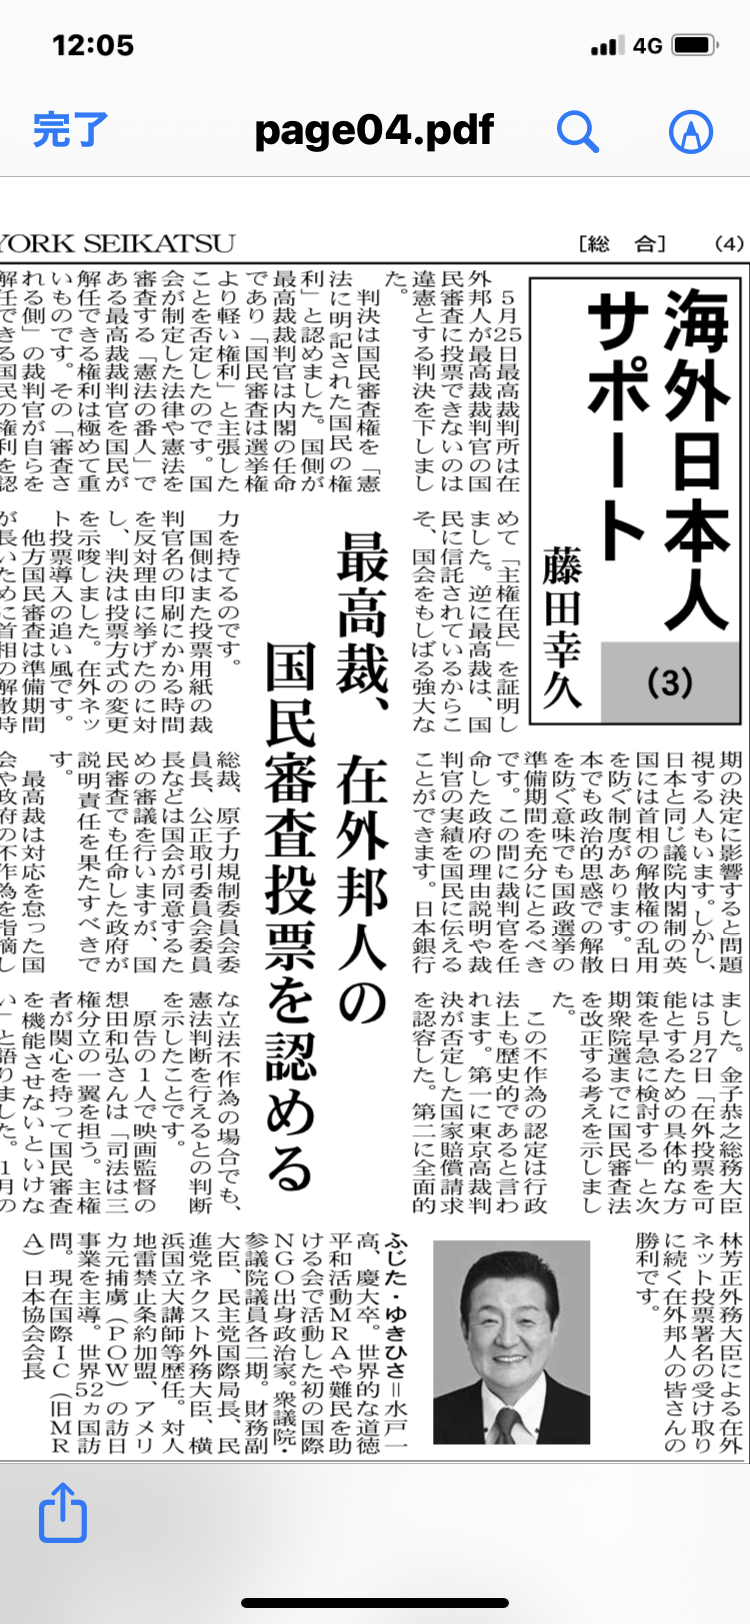 『ニューヨーク市民生活』連載の海外日本人サポート③掲載